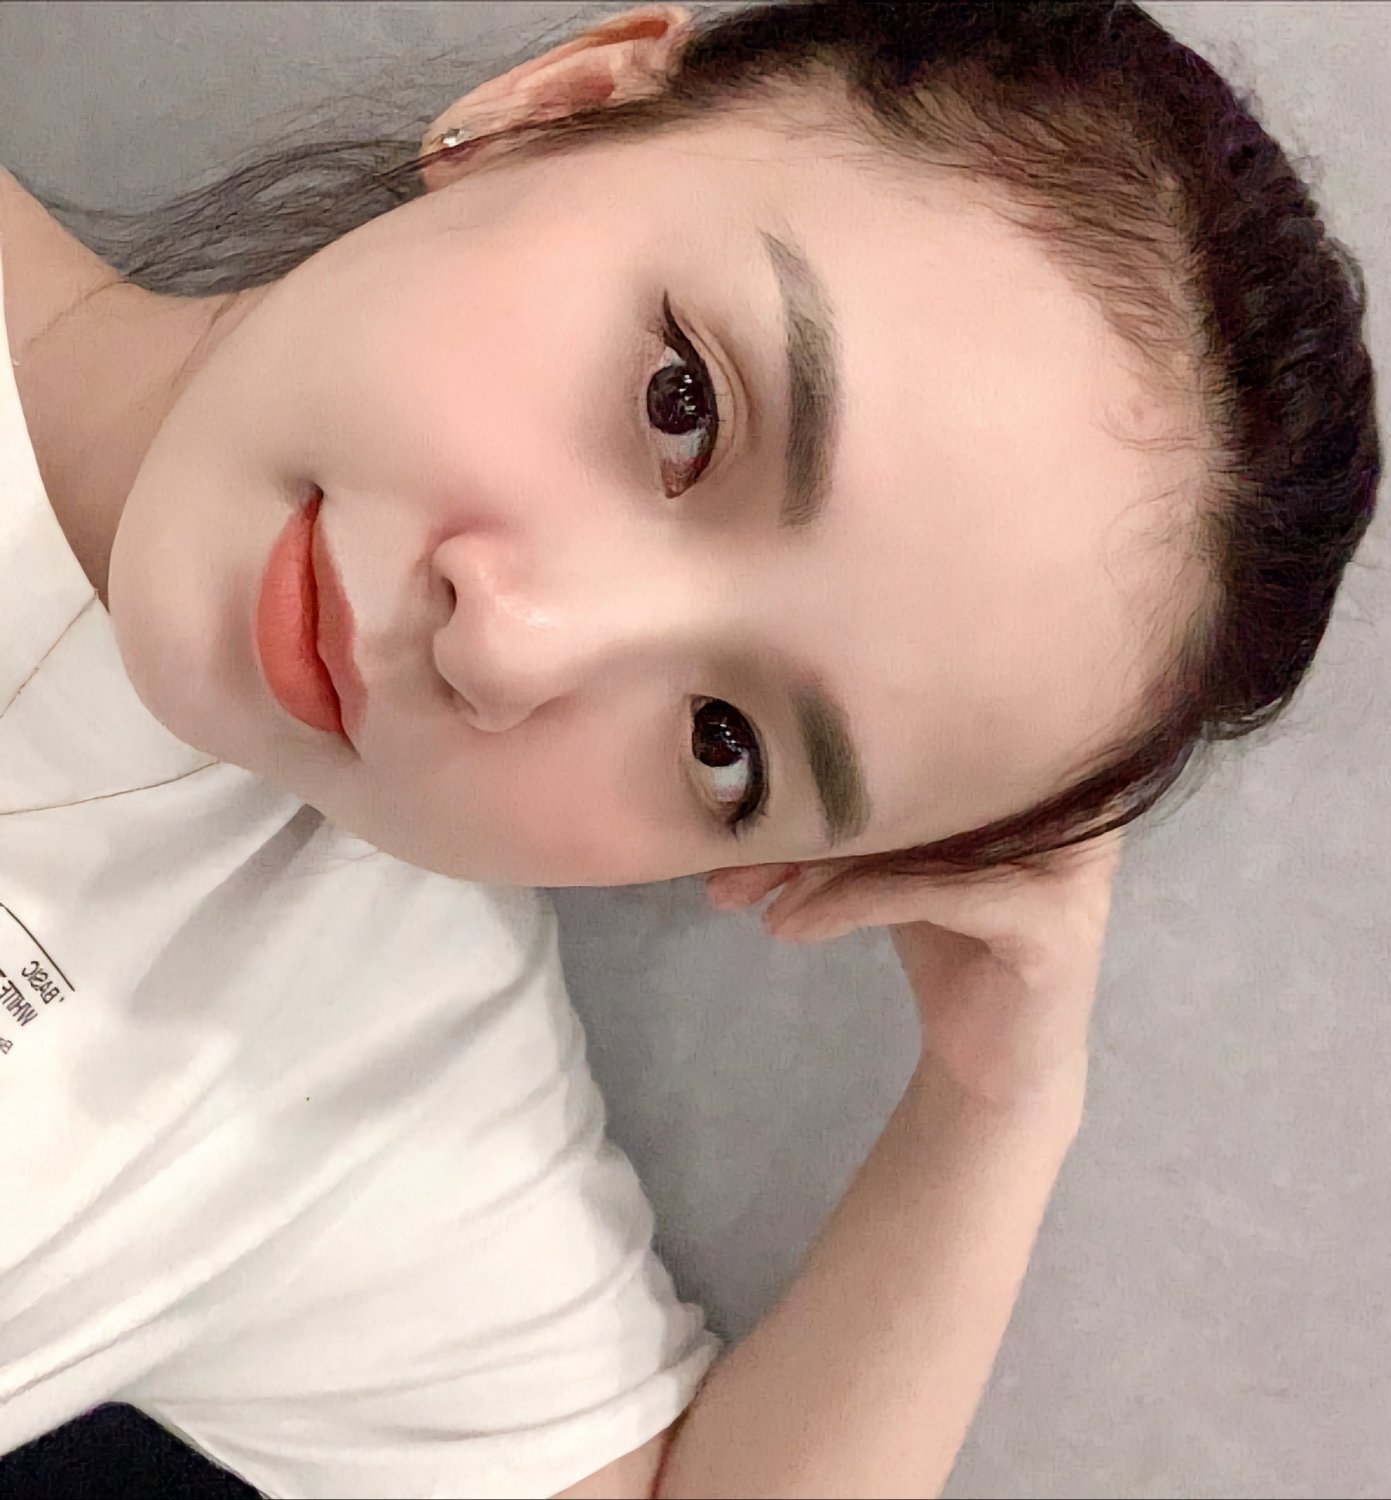 Asian Vietnam Girl Tattoo Selfie - DJ Kiều Max #LmvHTiUH